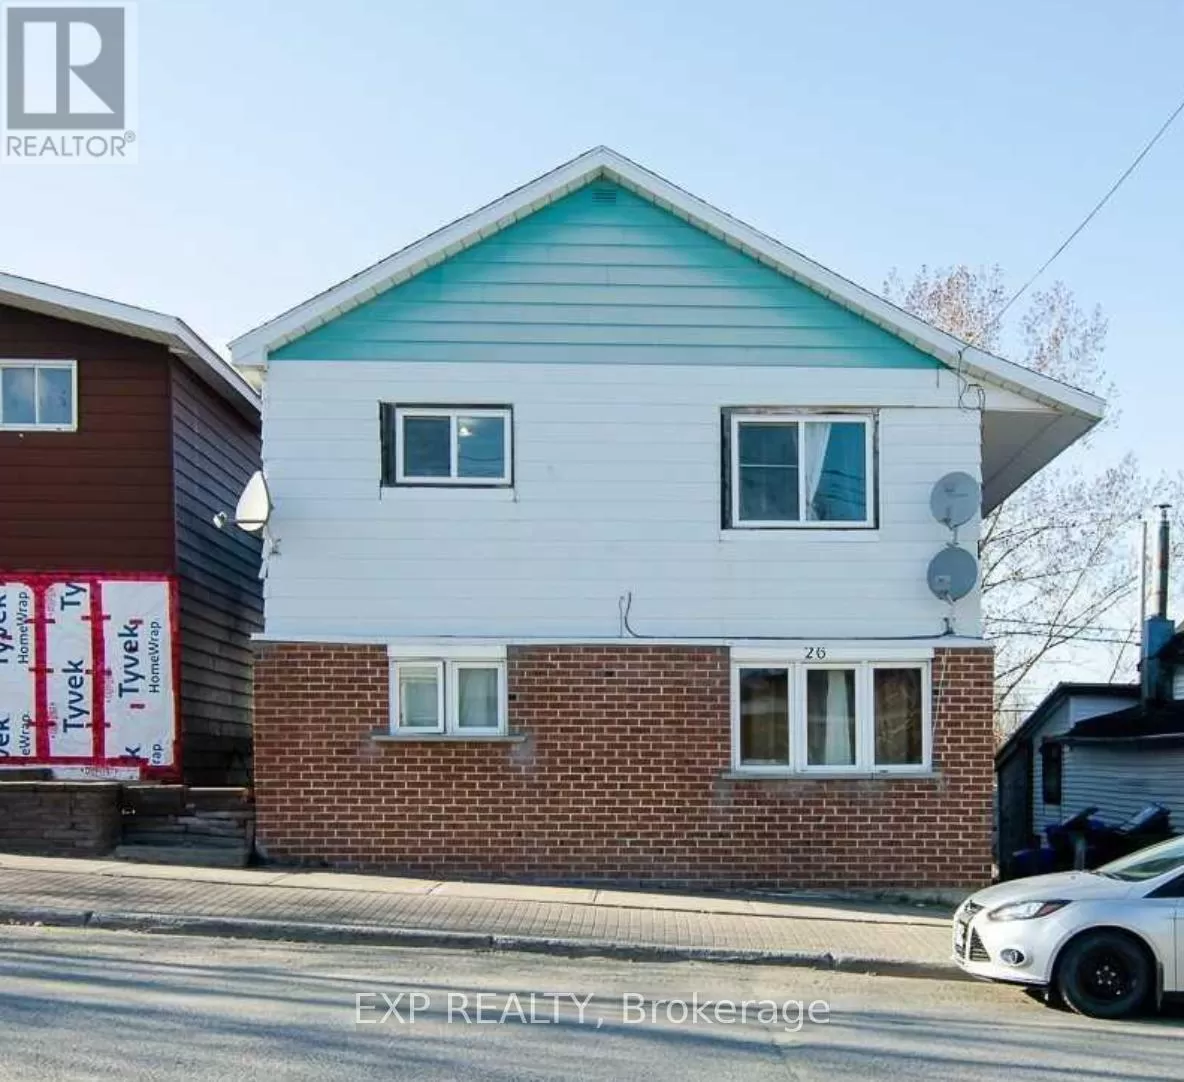 Multi-Family for rent: 26 Kirkland St W, Kirkland Lake, Ontario P2N 2G4